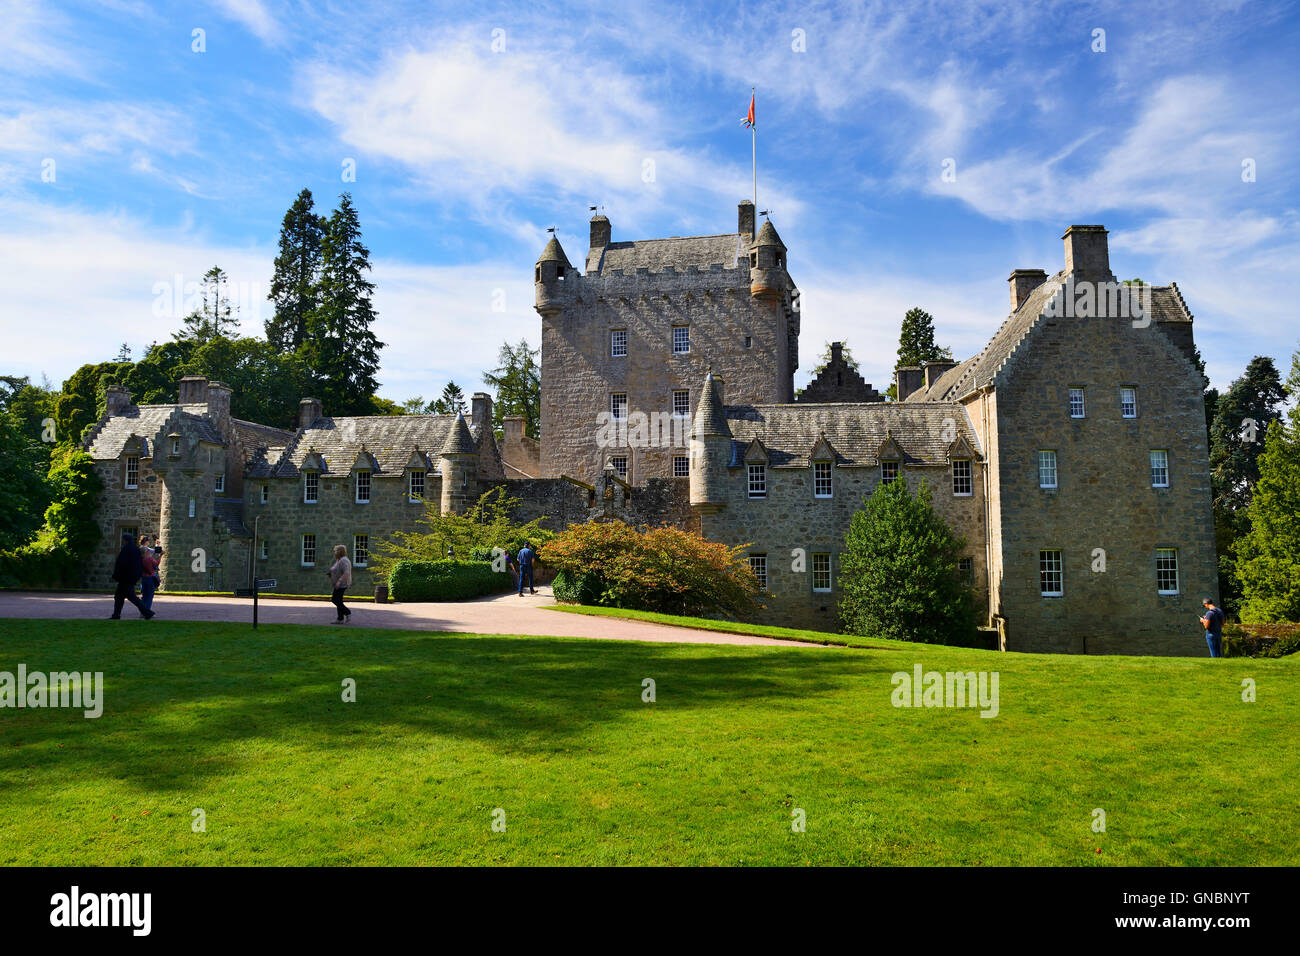 Cawdor Castle near Nairn in Inverness shire, Scotland Stock Photo